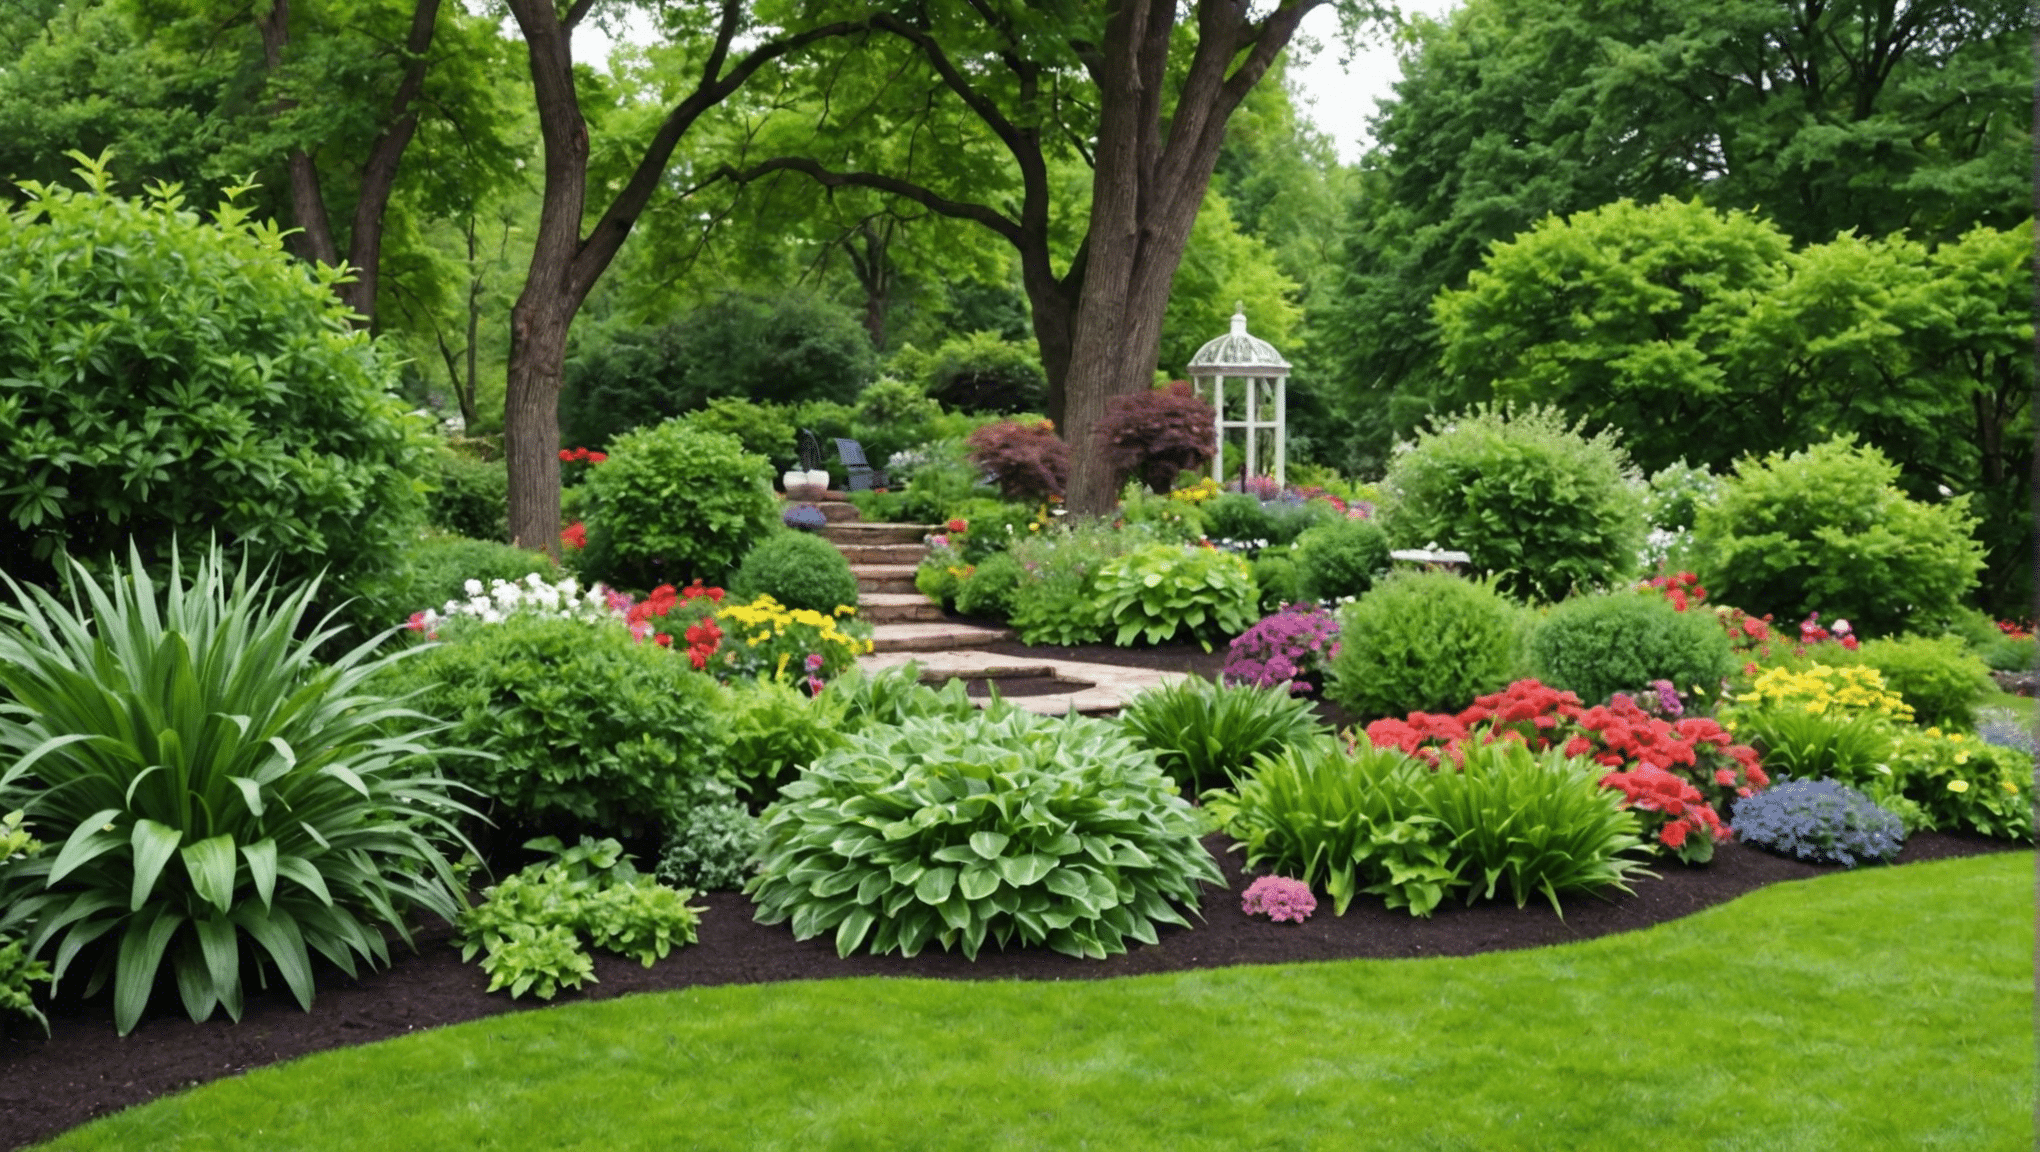 odkryj wspaniałe książki o ogrodnictwie dla początkujących i poznaj podstawy zakładania ogrodu, korzystając z naszych najlepszych rekomendacji.